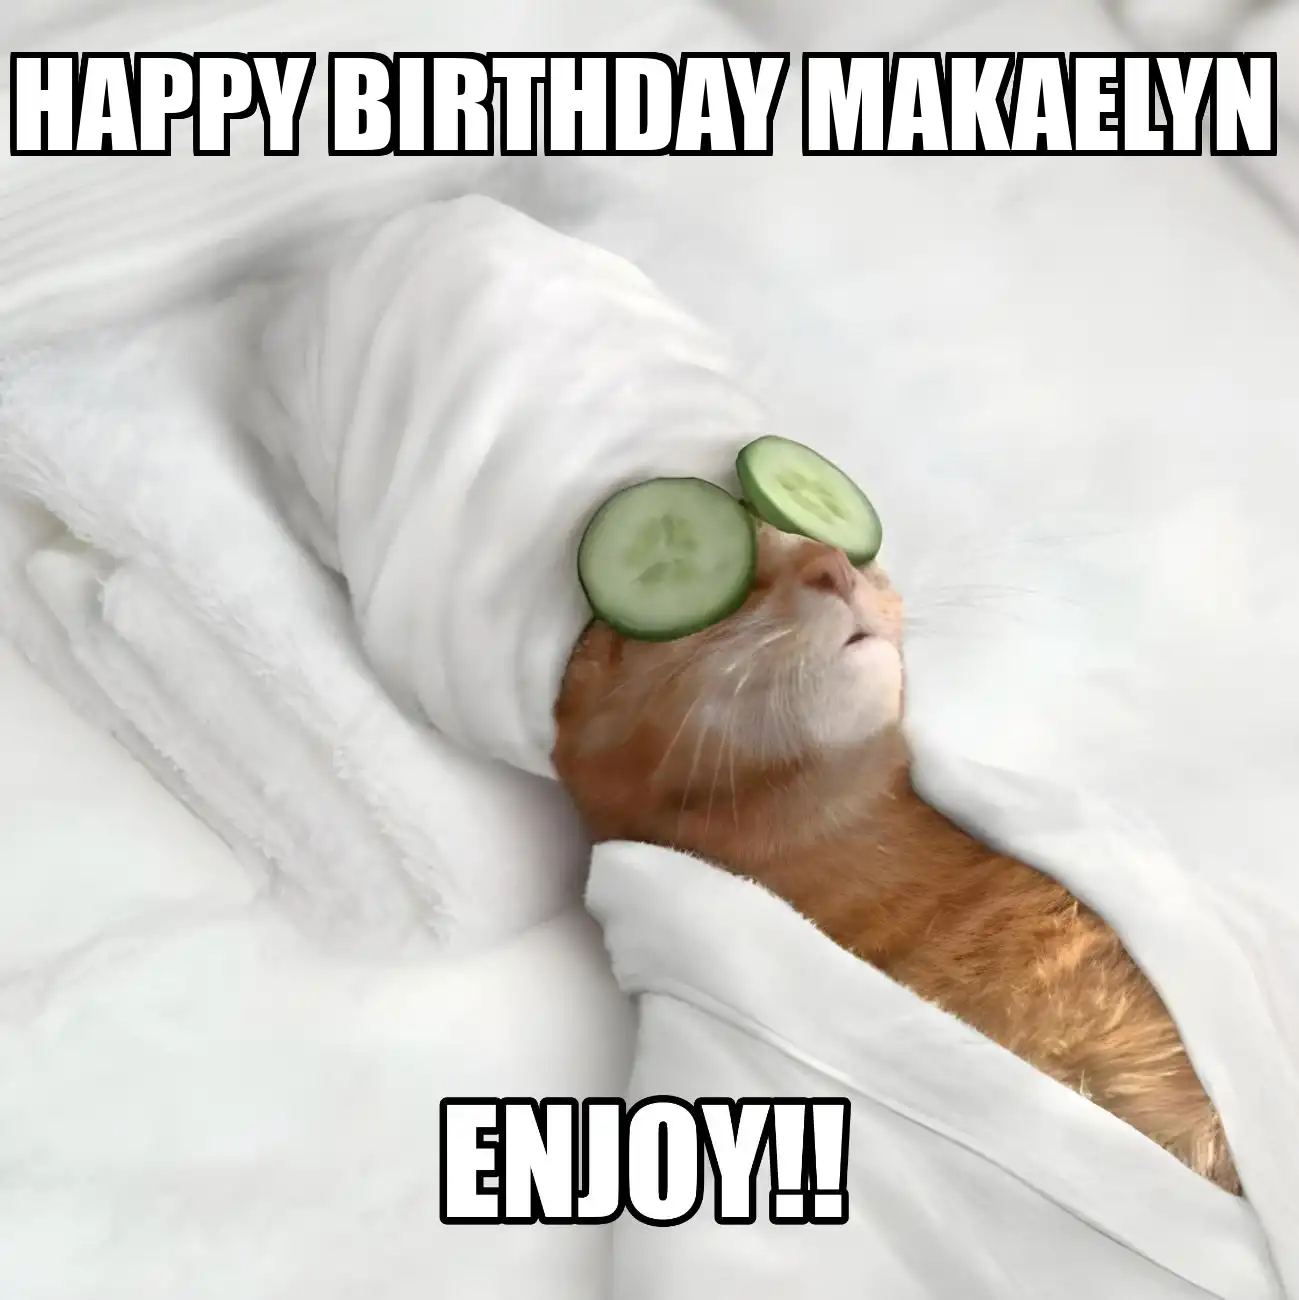 Happy Birthday Makaelyn Enjoy Cat Meme